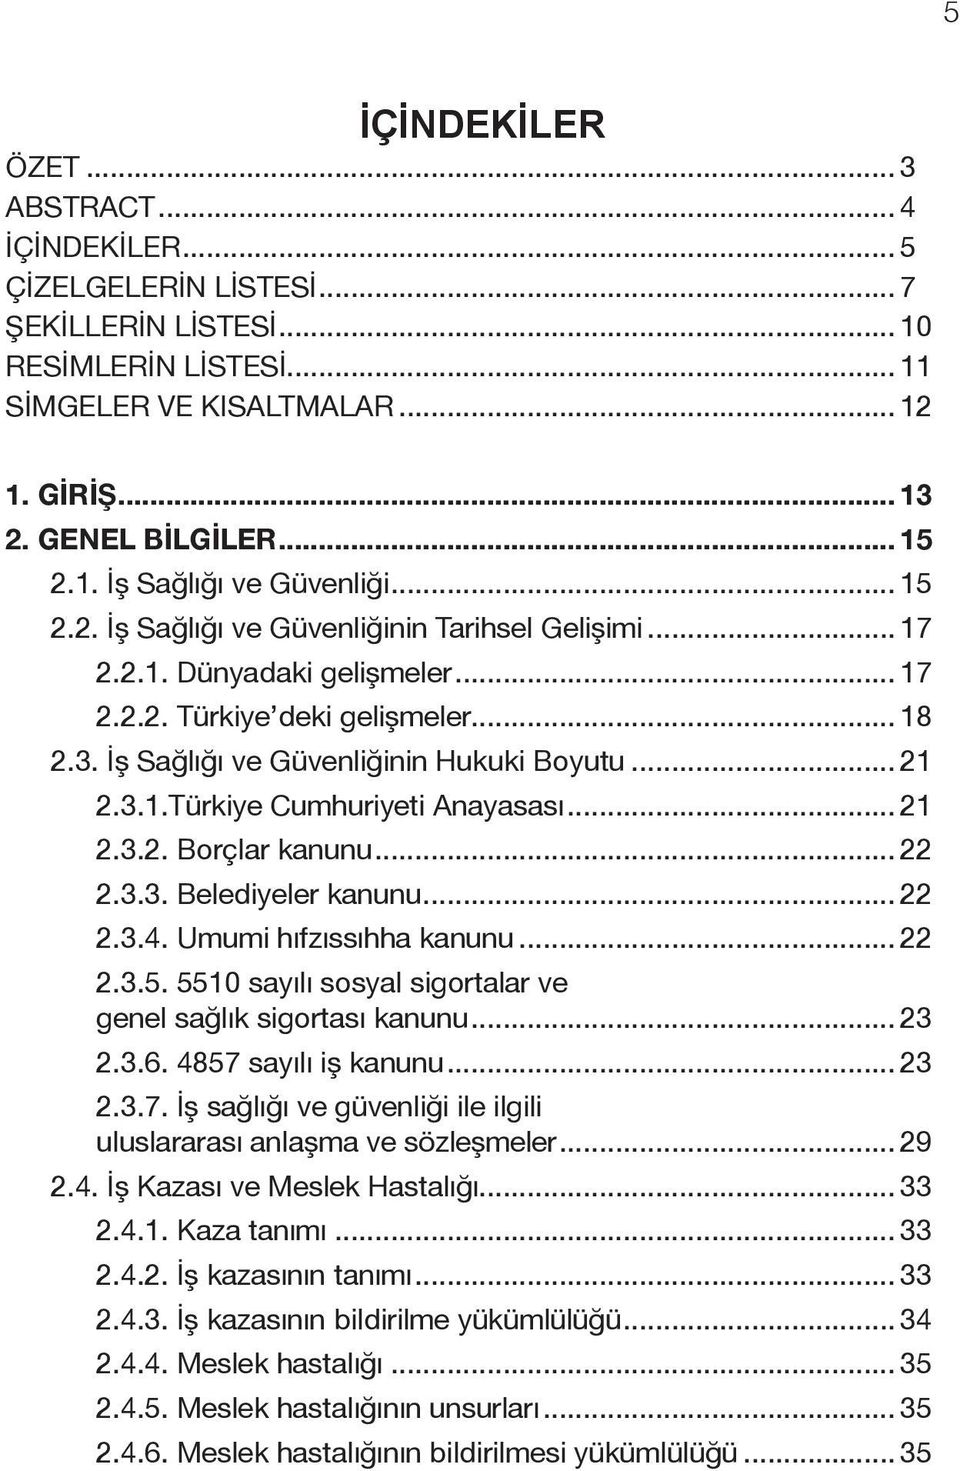 İş Sağlığı ve Güvenliğinin Hukuki Boyutu... 21 2.3.1.Türkiye Cumhuriyeti Anayasası... 21 2.3.2. Borçlar kanunu... 22 2.3.3. Belediyeler kanunu... 22 2.3.4. Umumi hıfzıssıhha kanunu... 22 2.3.5.